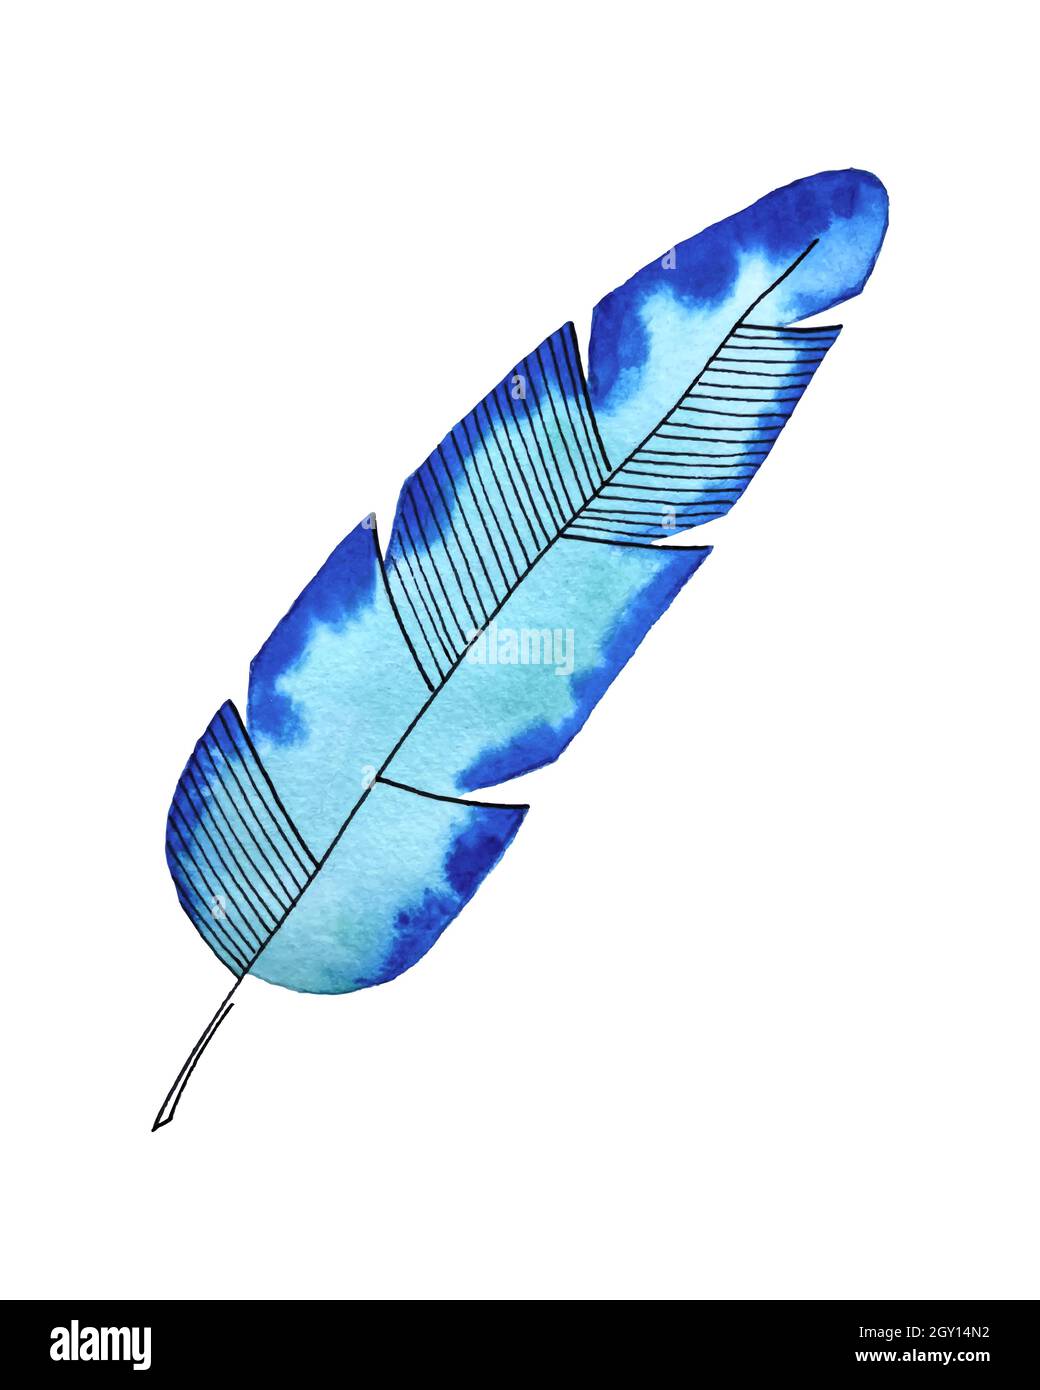 Foglia di palma acquerello stilizzato doodling disegno a mano, decorativo, per arredamento, colore turchese blu, isolato, su sfondo bianco, per il tuo design. Illustrazione vettoriale Illustrazione Vettoriale